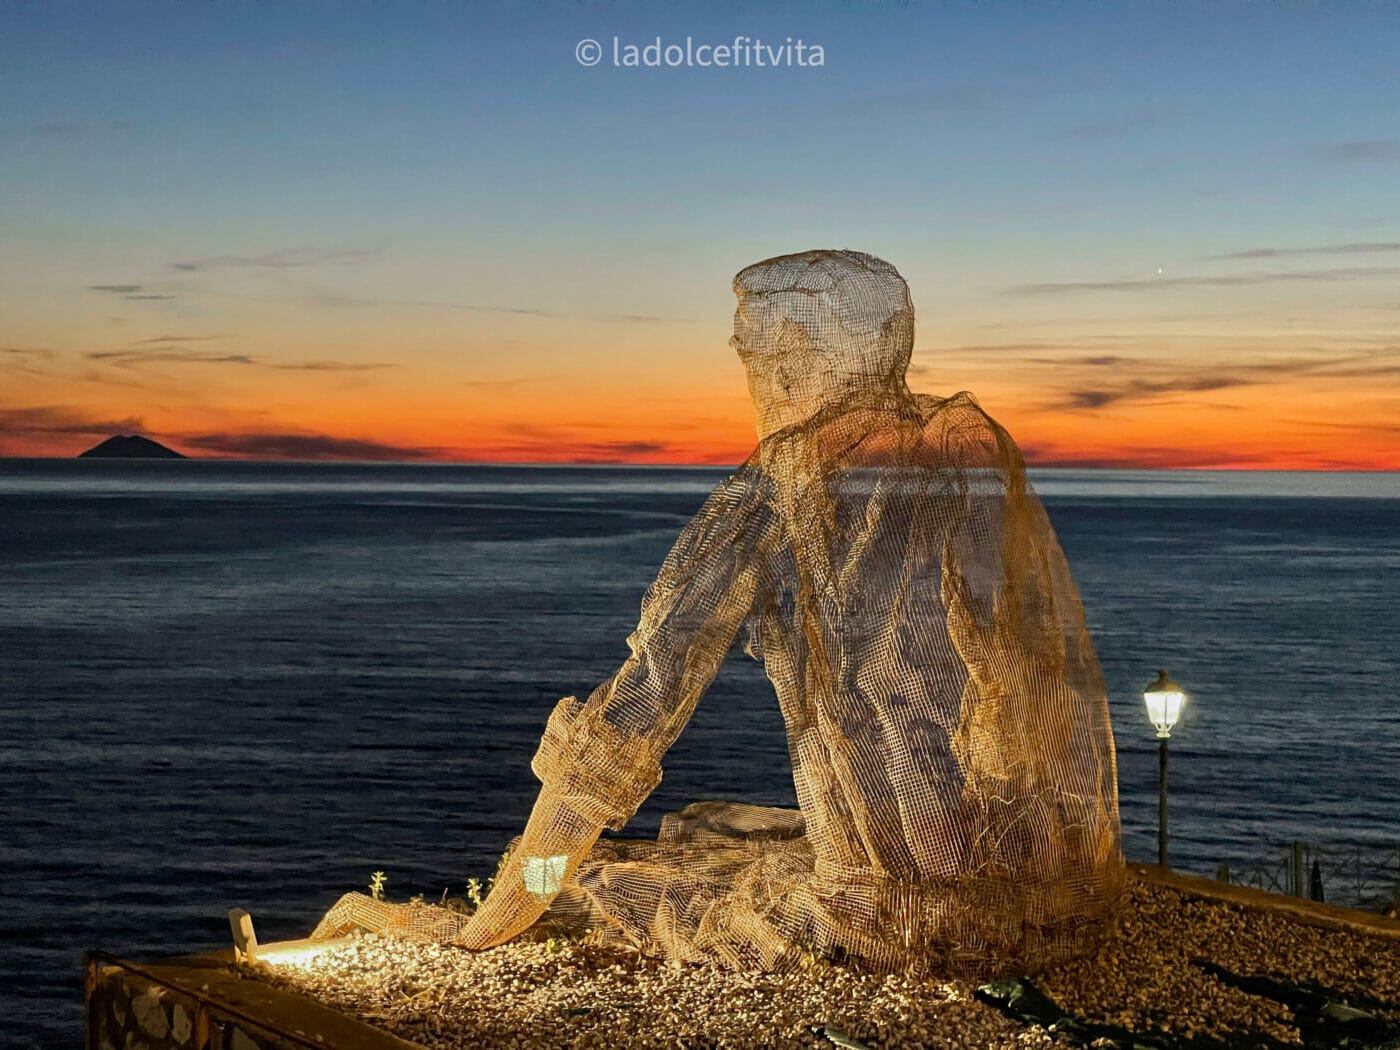 Wiremesh sculpture "Il Collezionista dei Venti" at sunset in Pizzo Calabria